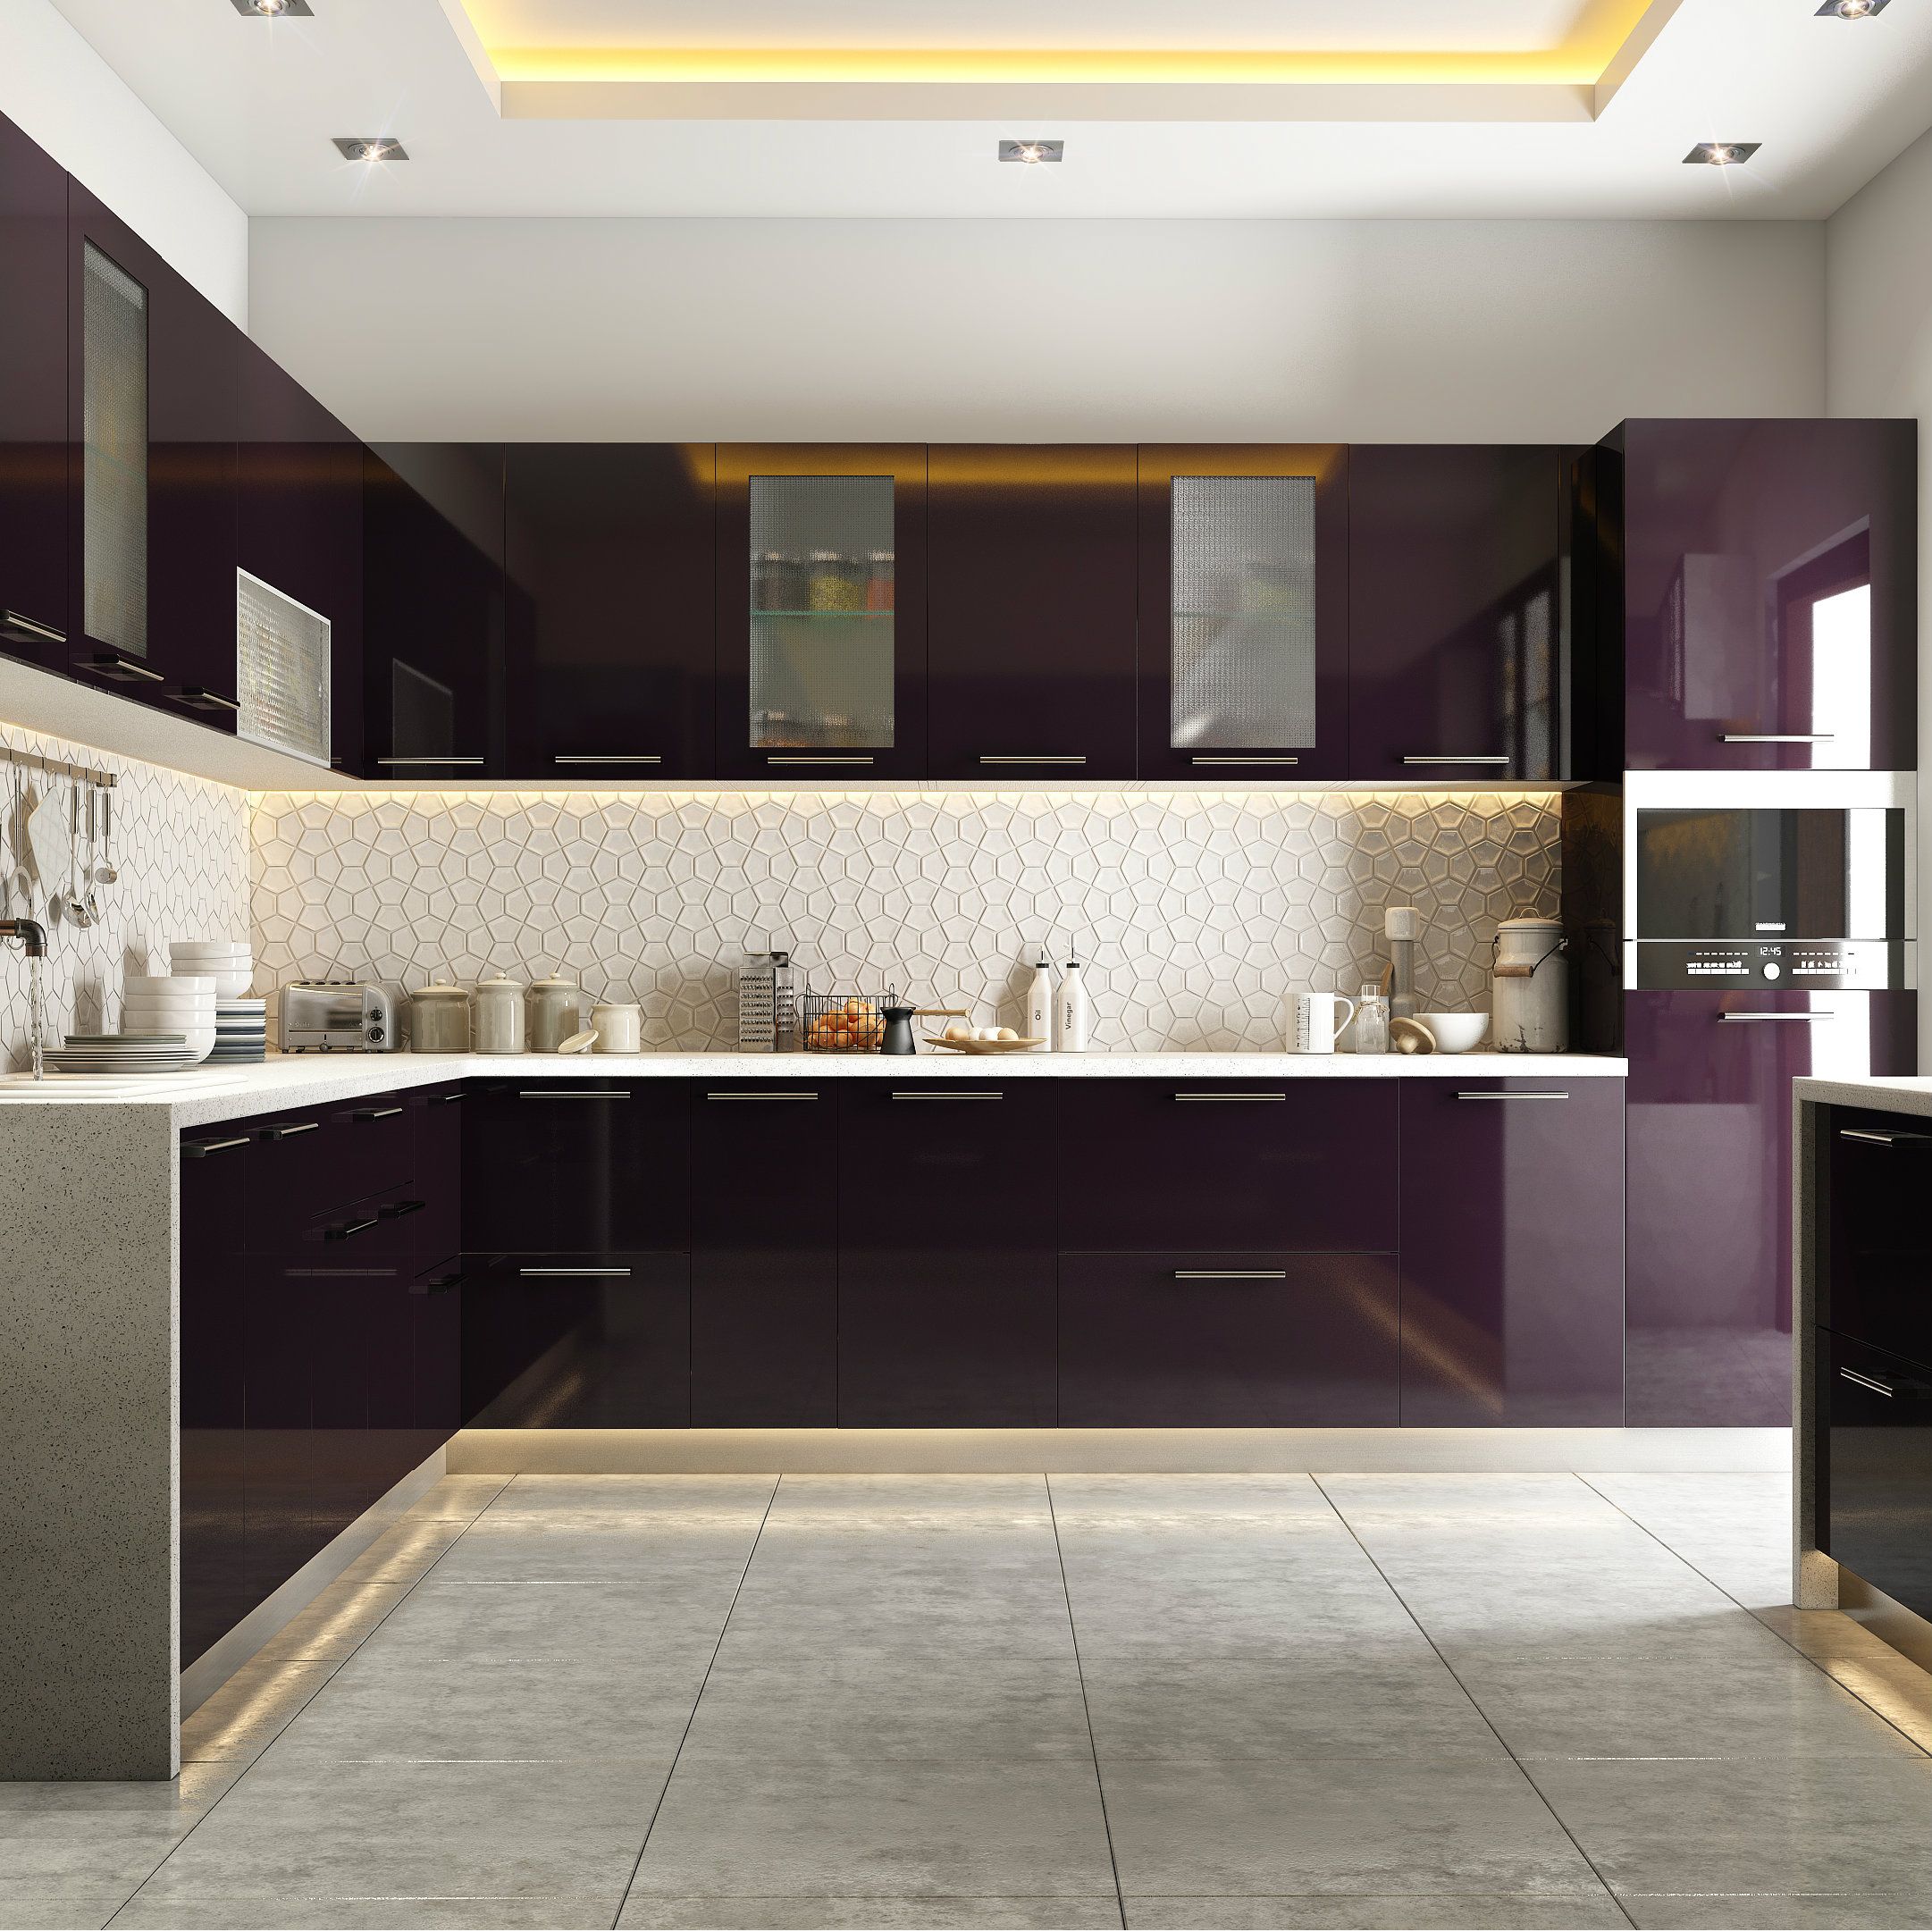 Modular kitchens Modular kitchen in burgundy tones PPZQWBHPP